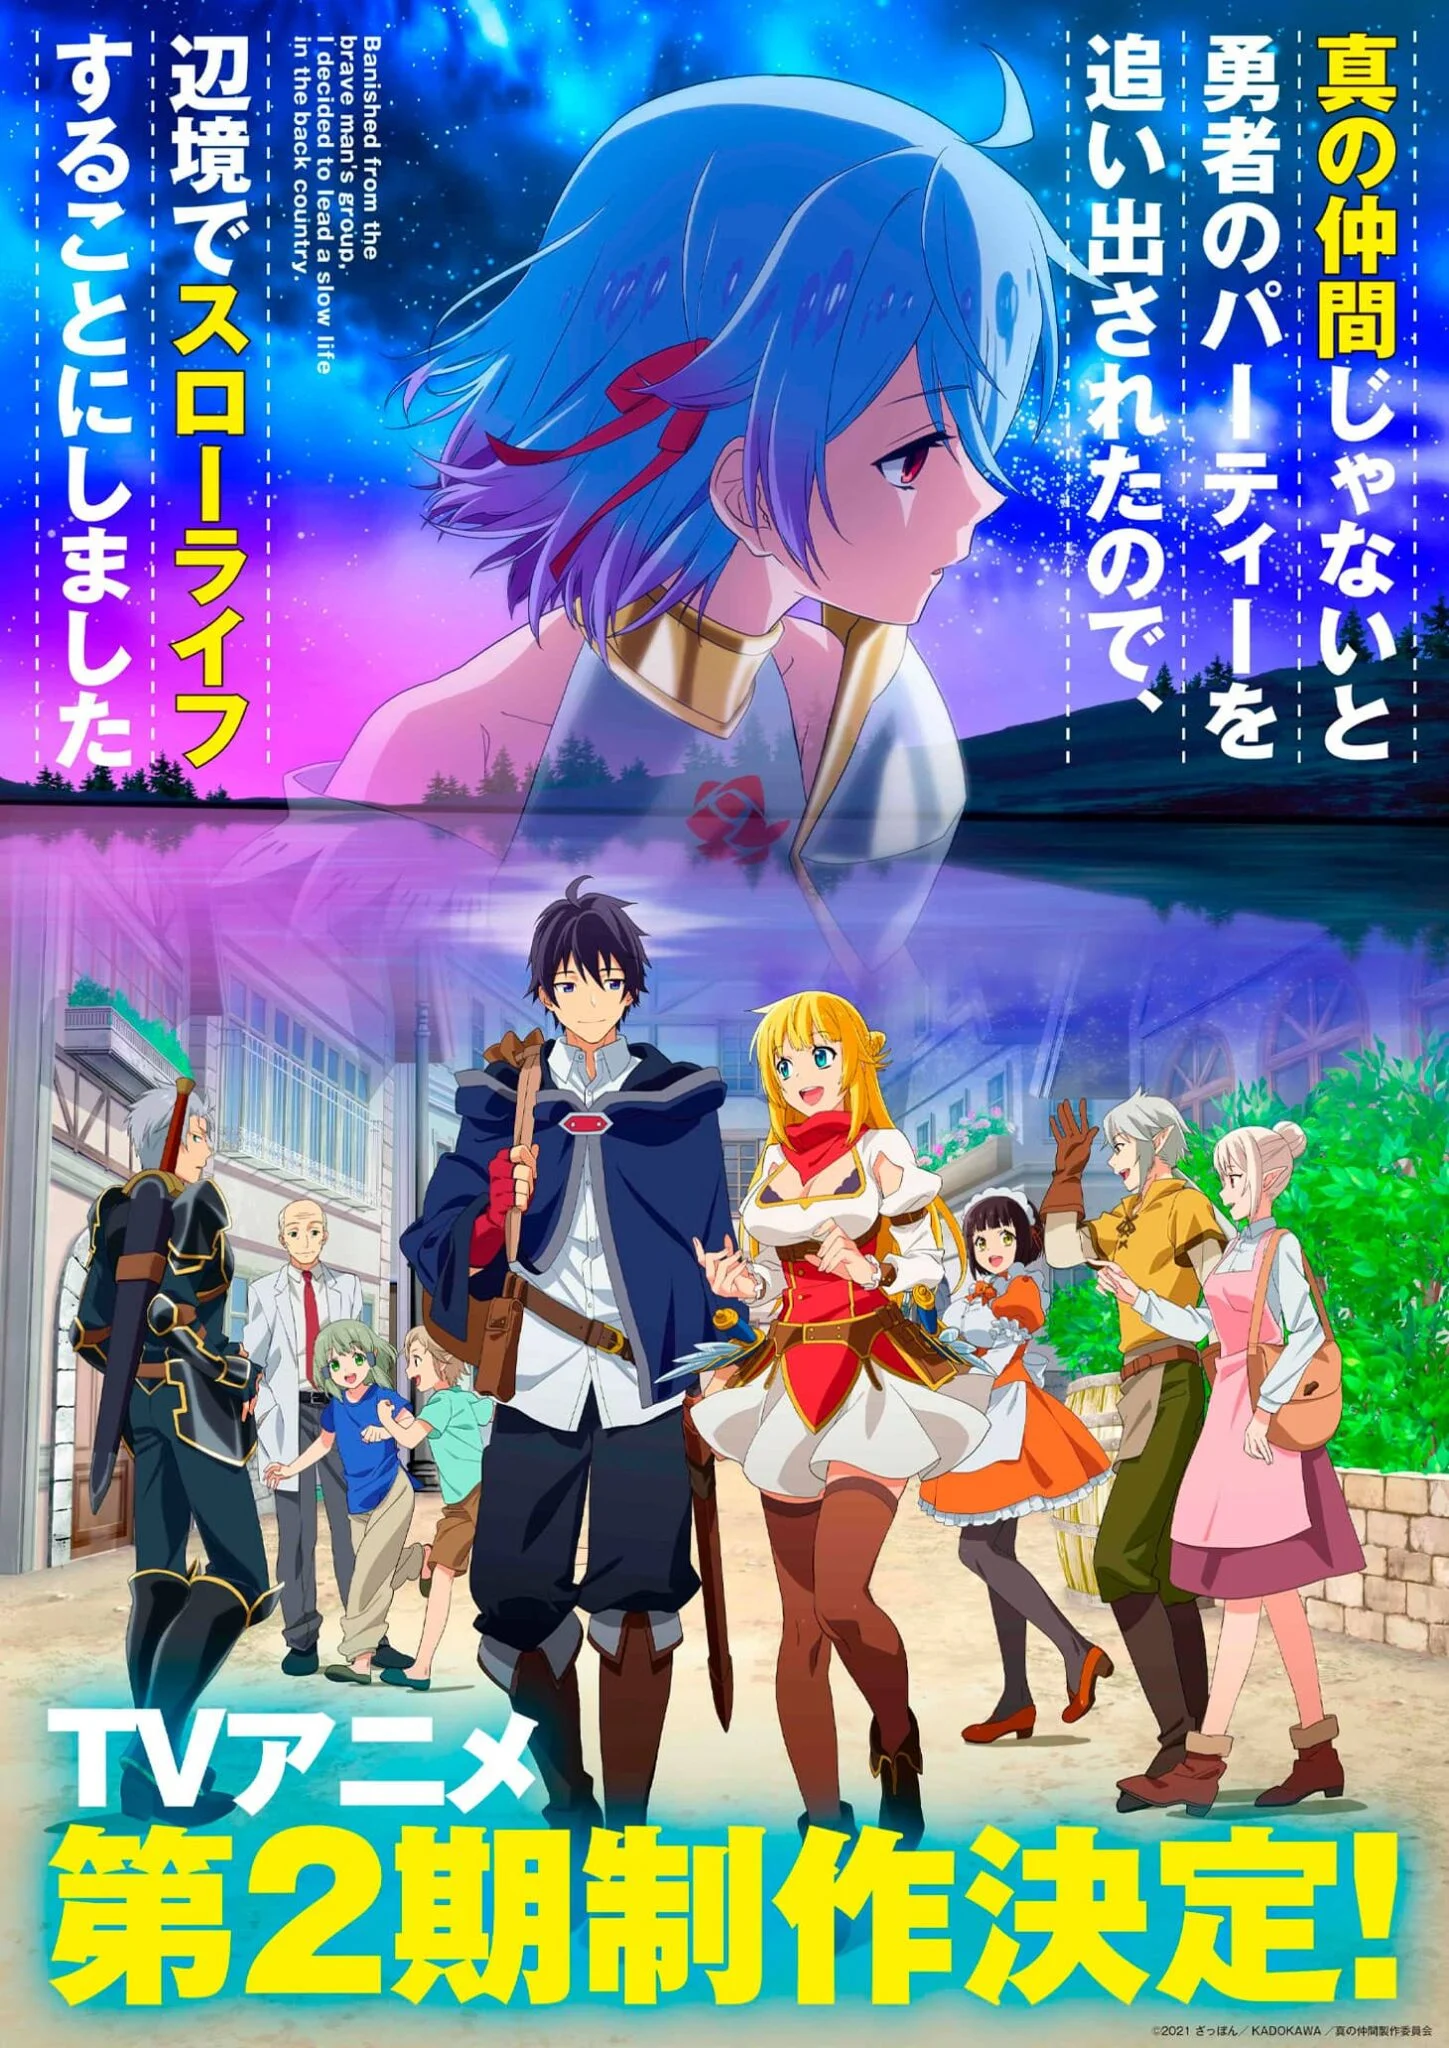 O anime Kaifuku Jutsushi no Yarinaoshi terá uma 2ª temporada? O